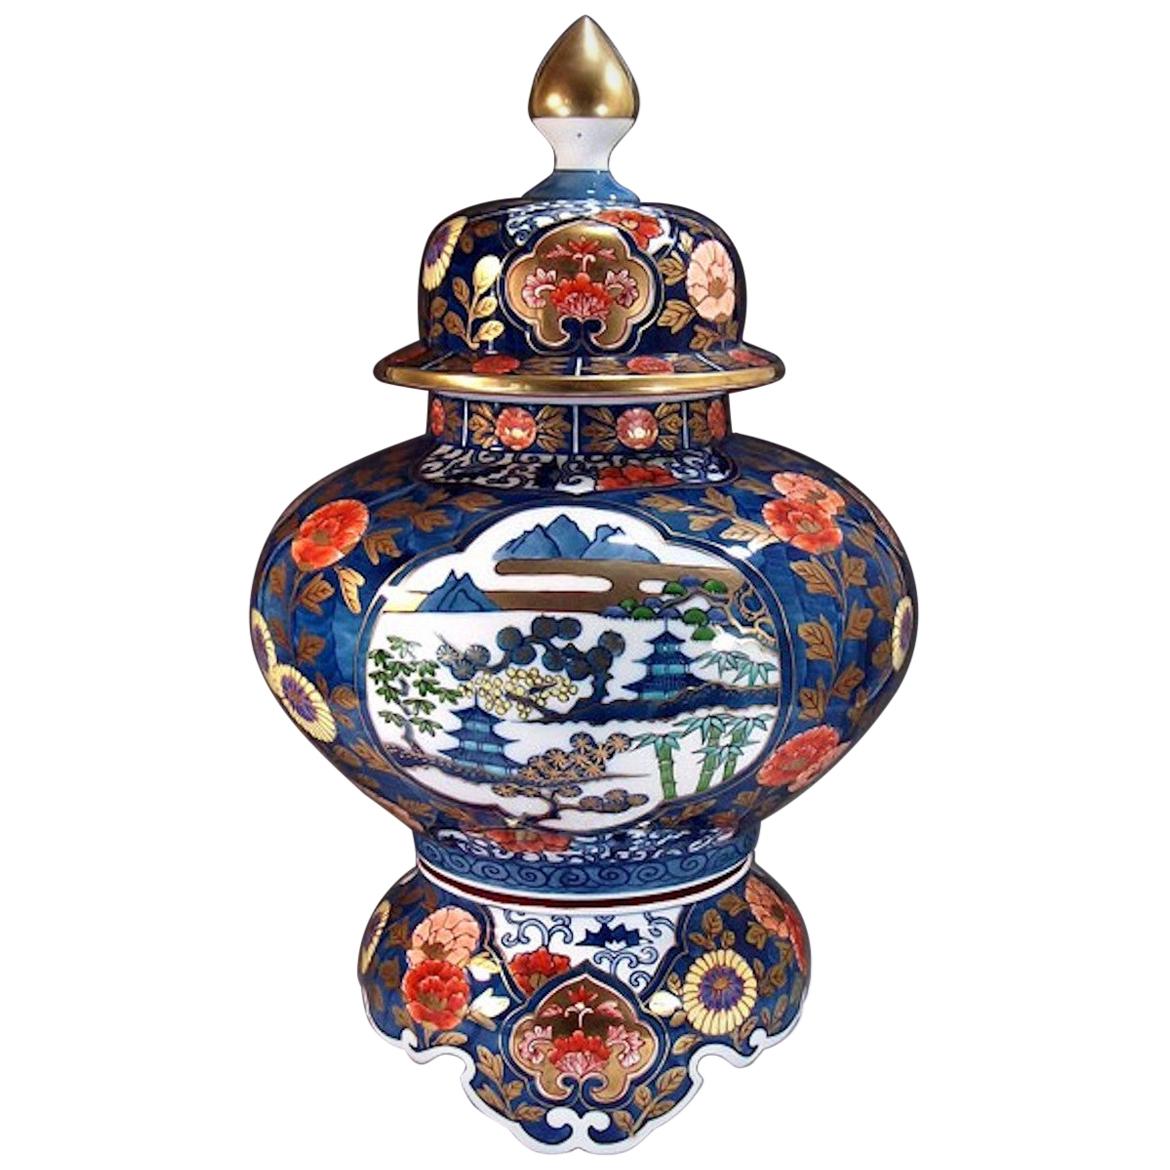 Grand vase japonais en porcelaine bleu et or par un maître artiste contemporain